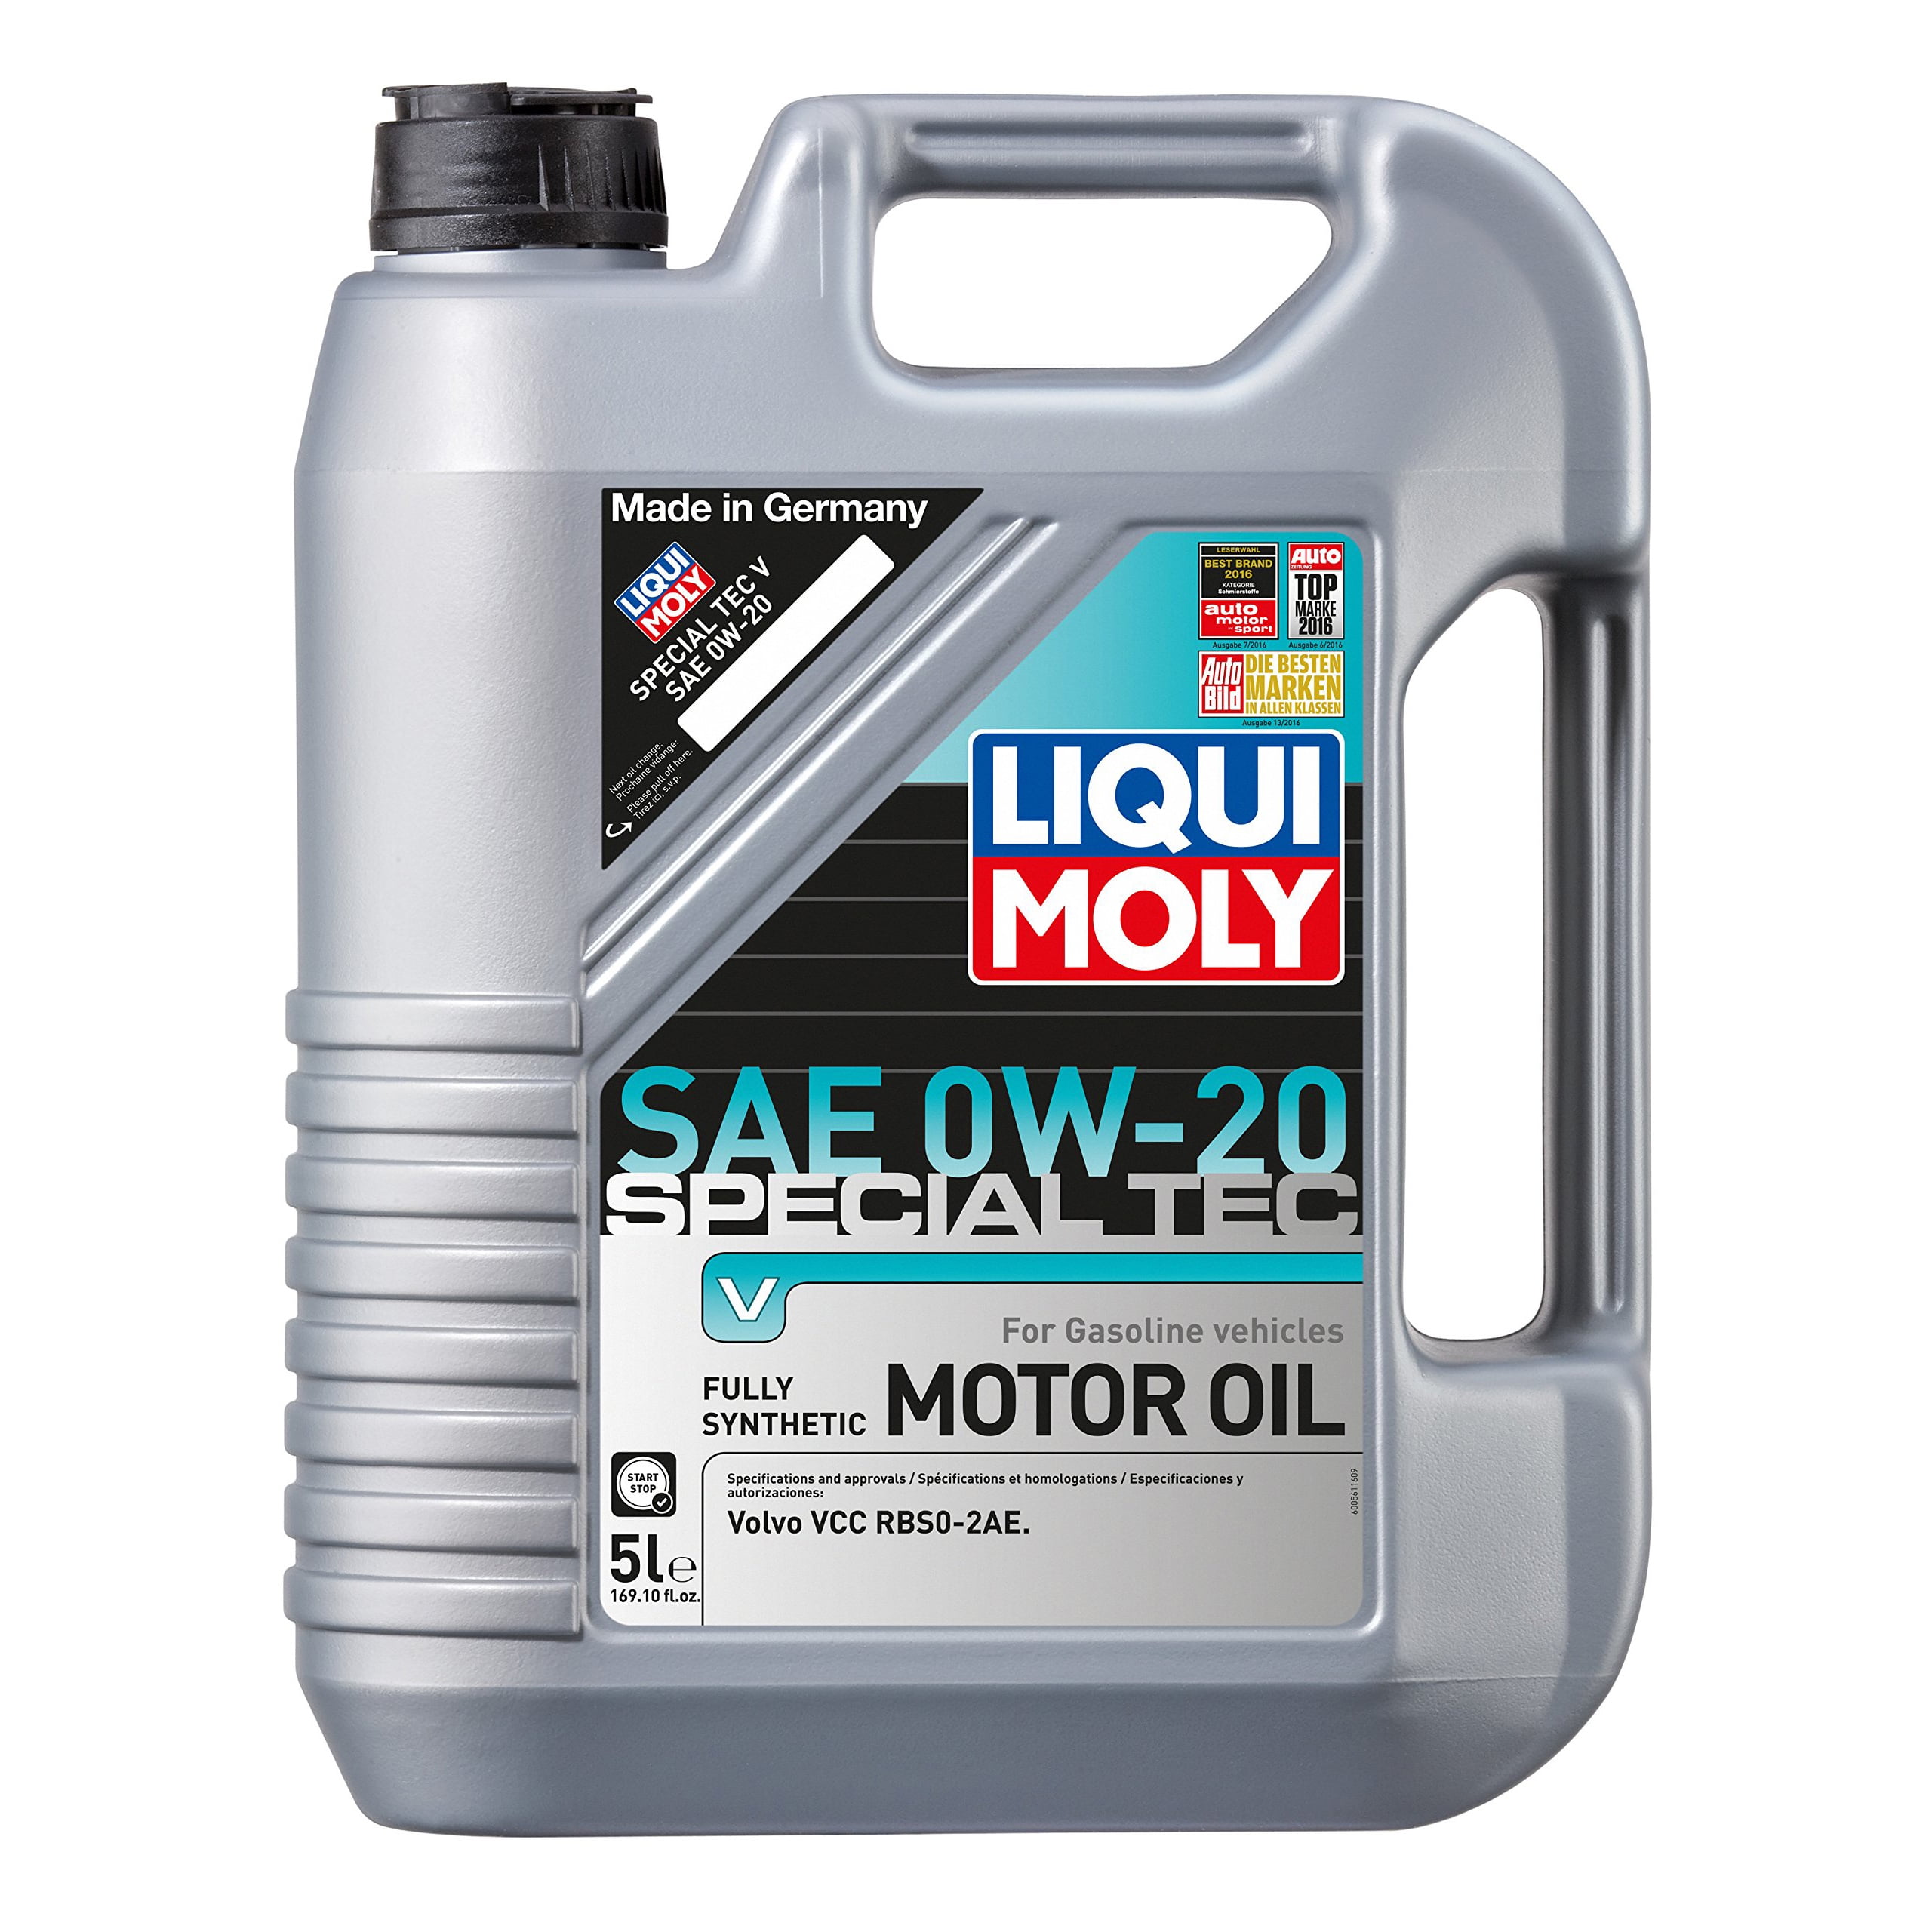 LIQUI MOLY 5L Special Tec V Motor Oil 0W-20 - Walmart.com